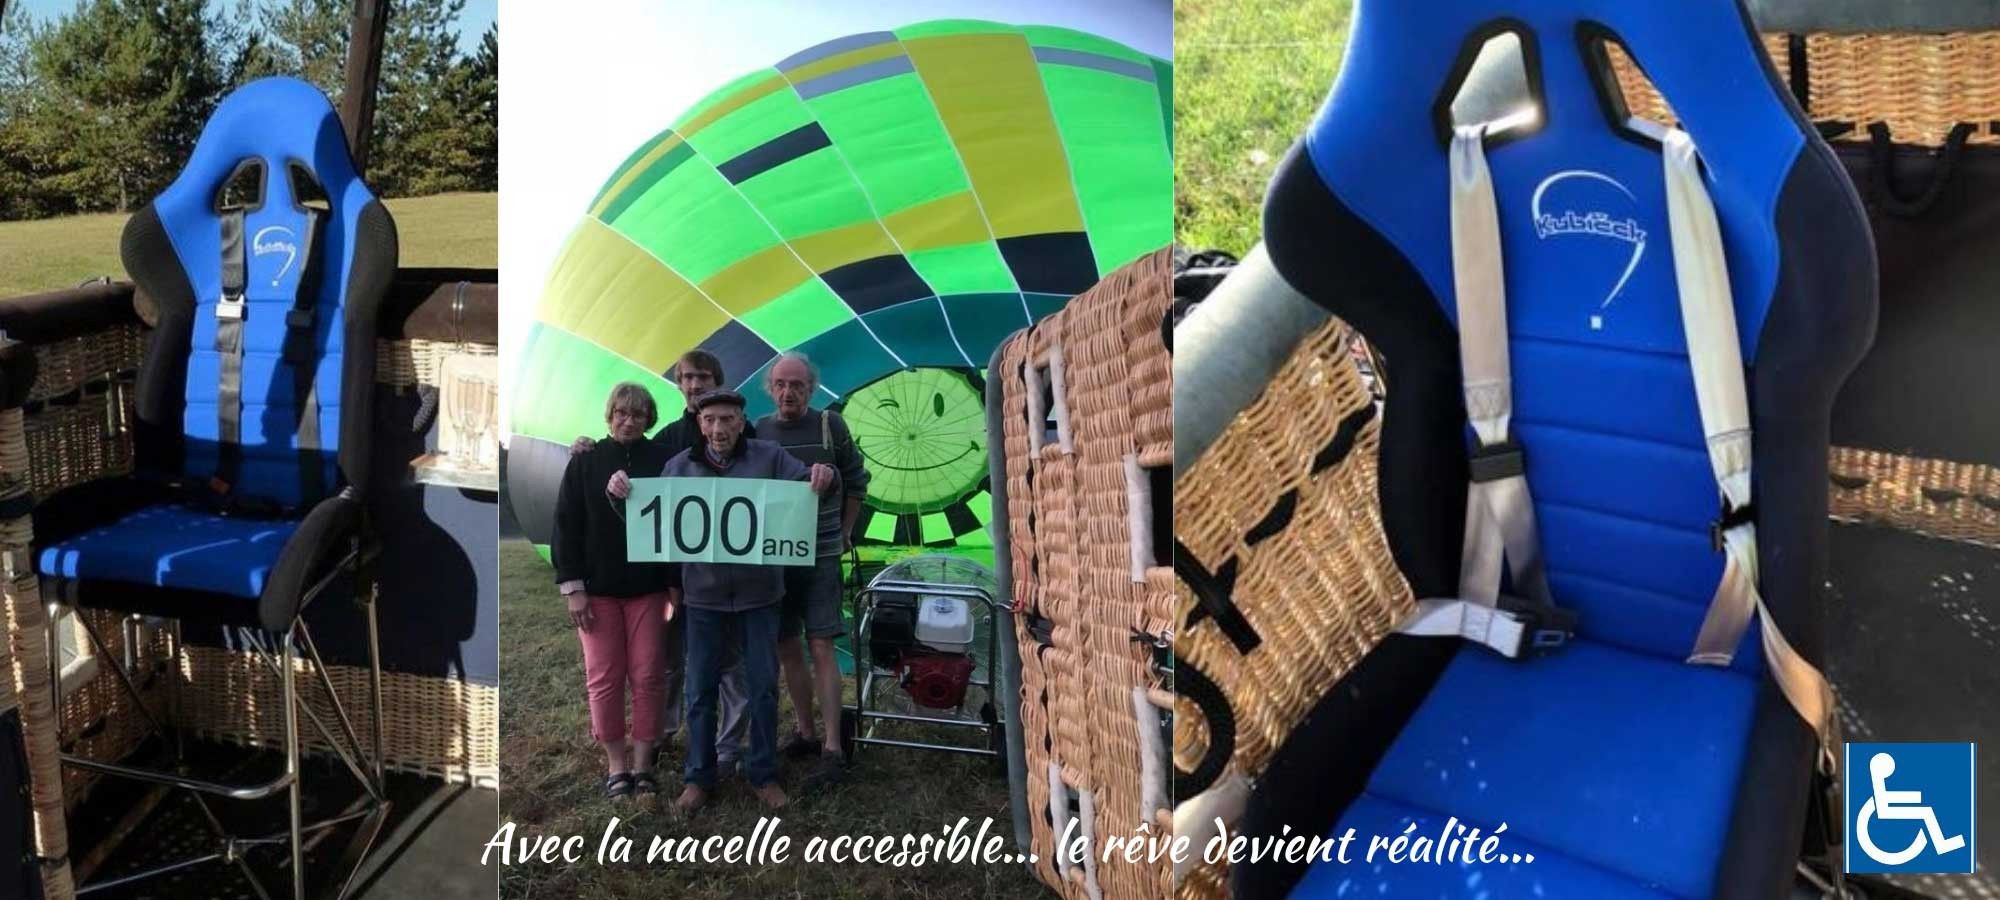 Montgolfière accessible pour les personnes à mobilité réduite et ou handicapés